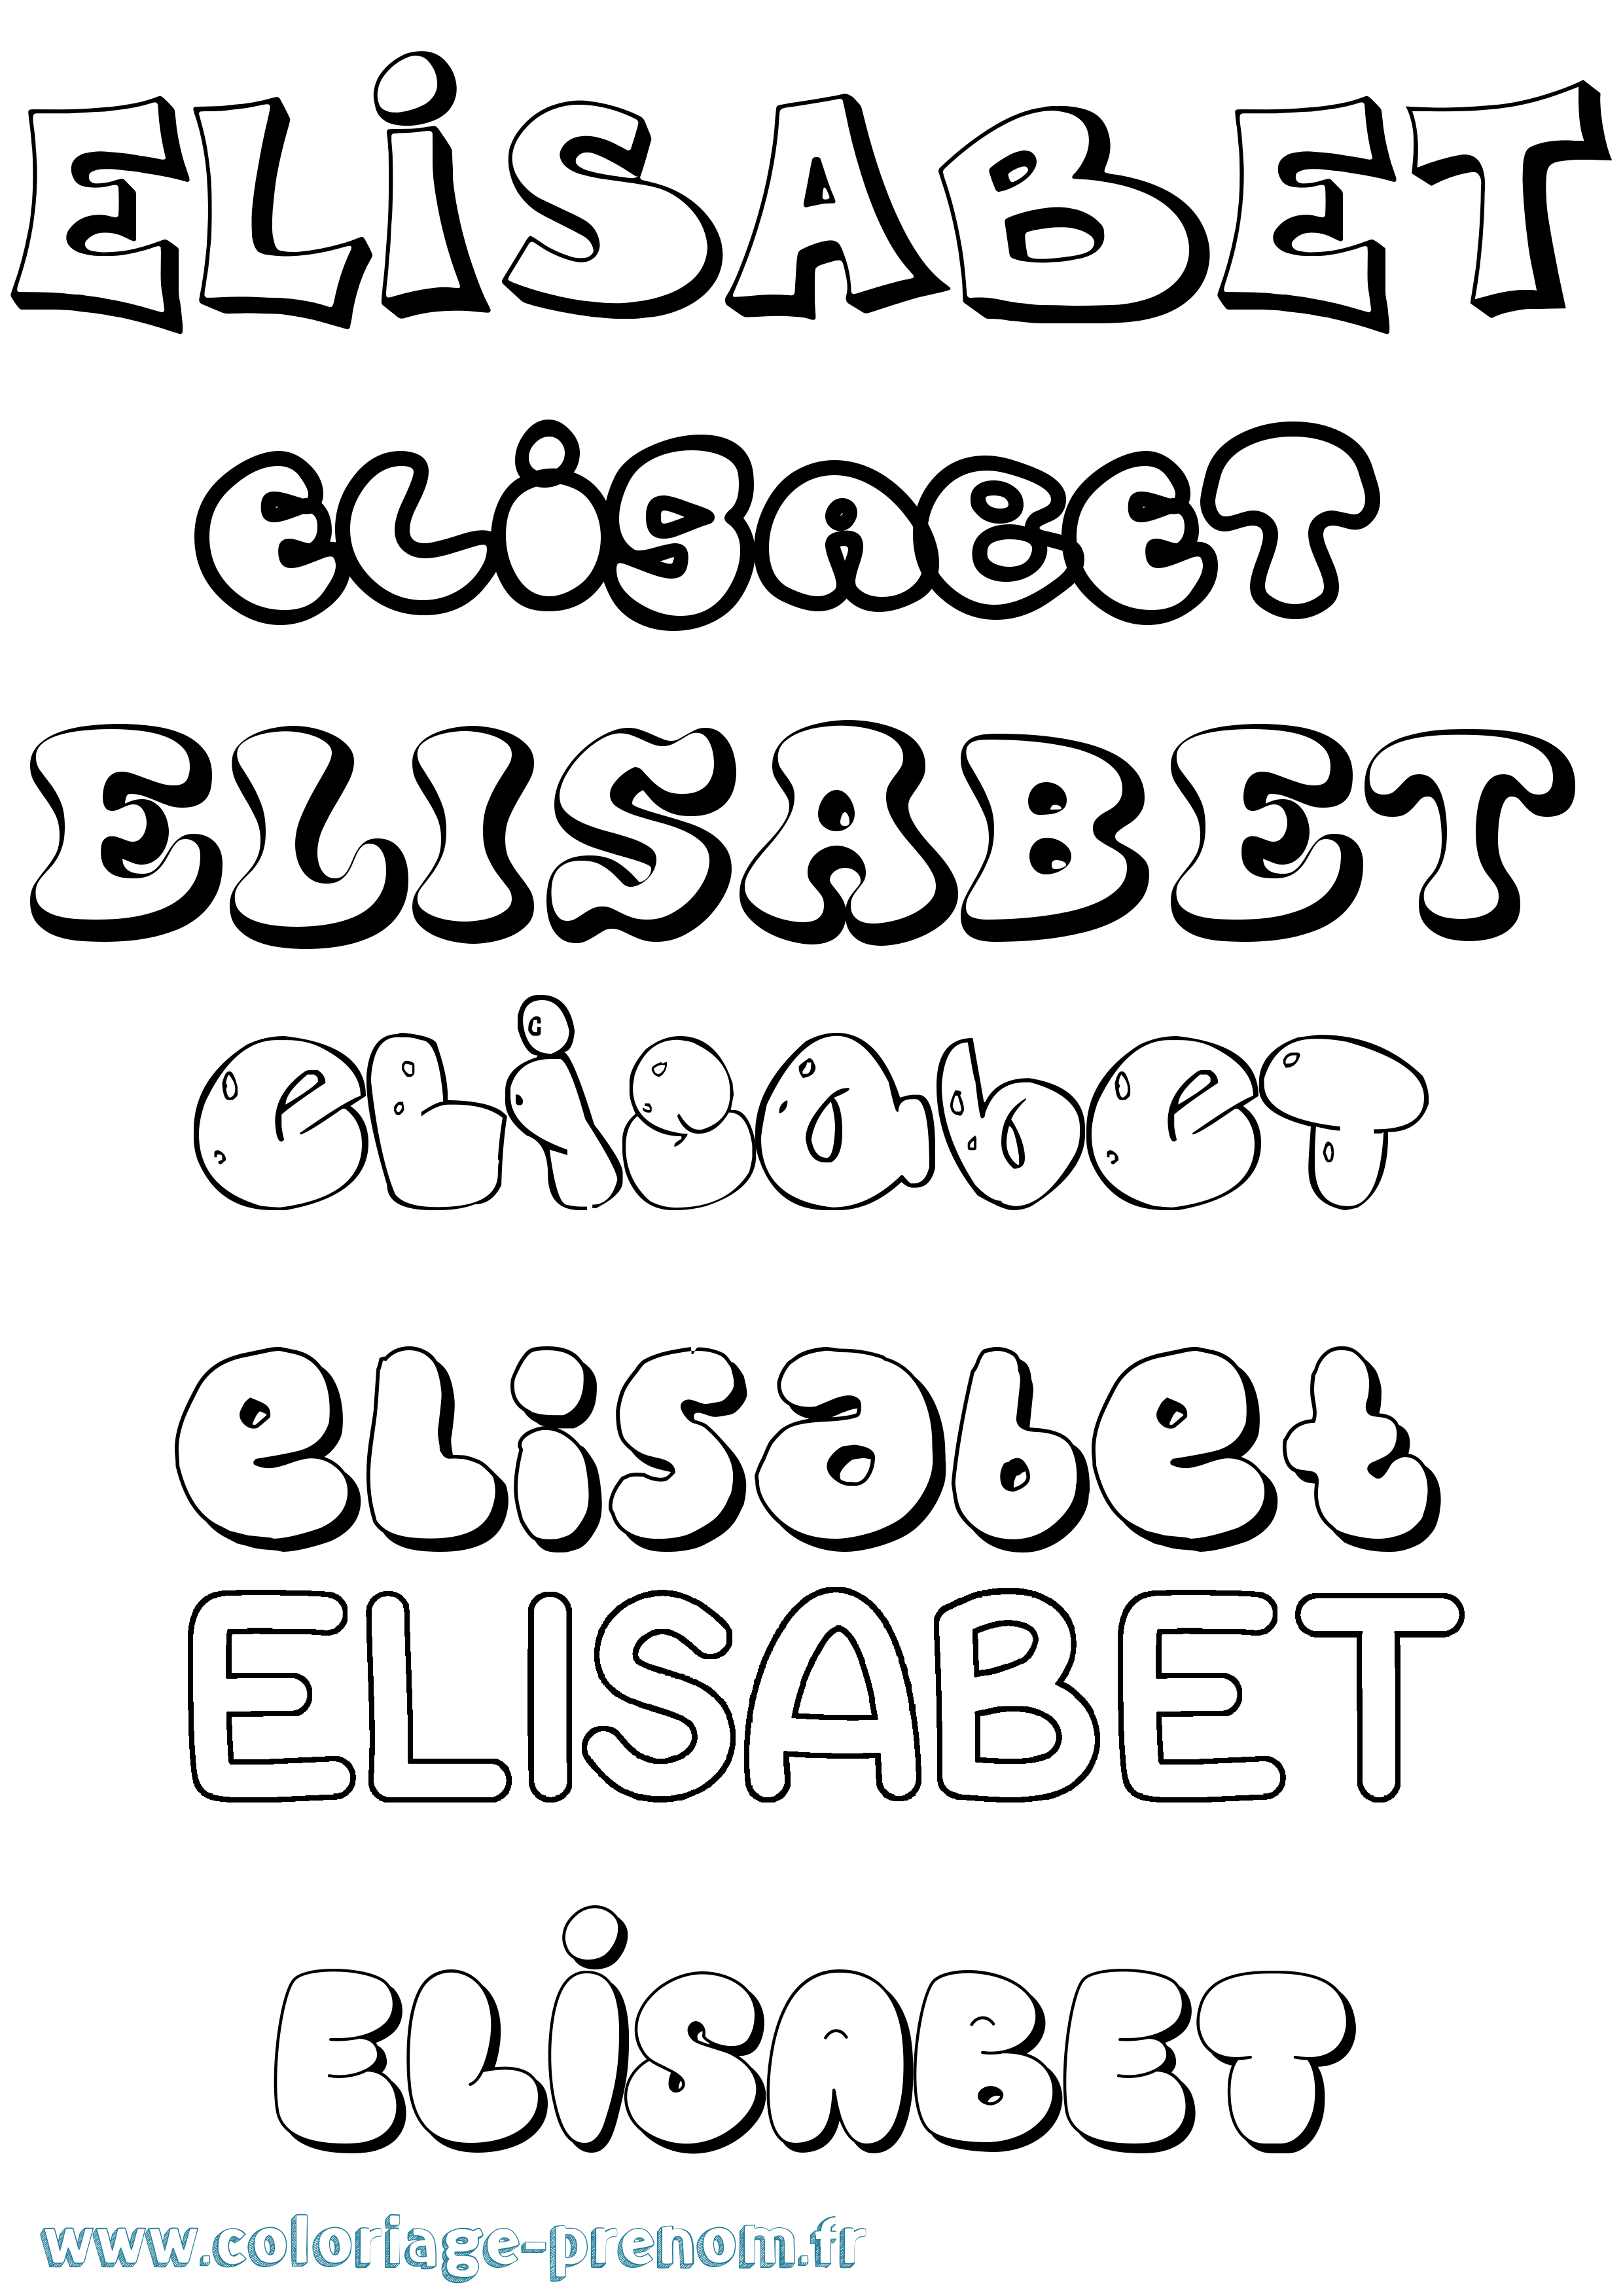 Coloriage prénom Elisabet Bubble